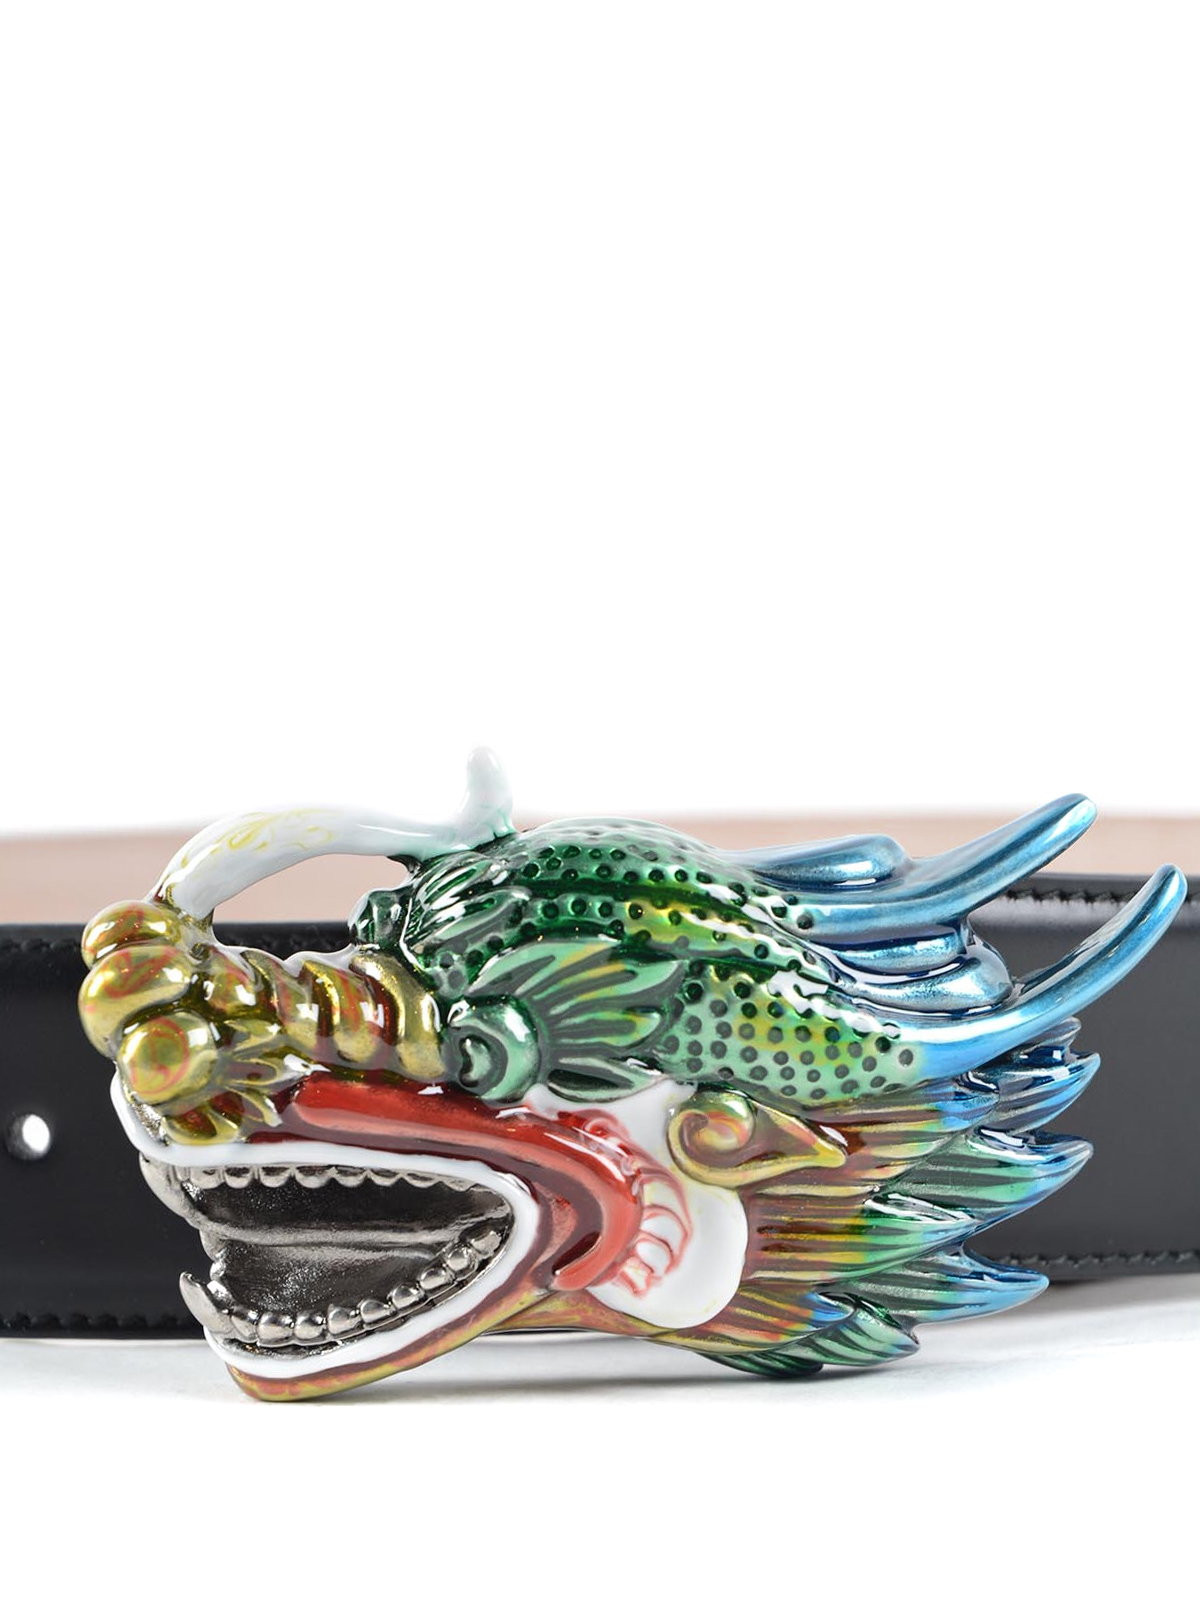 gucci dragon belt buckle